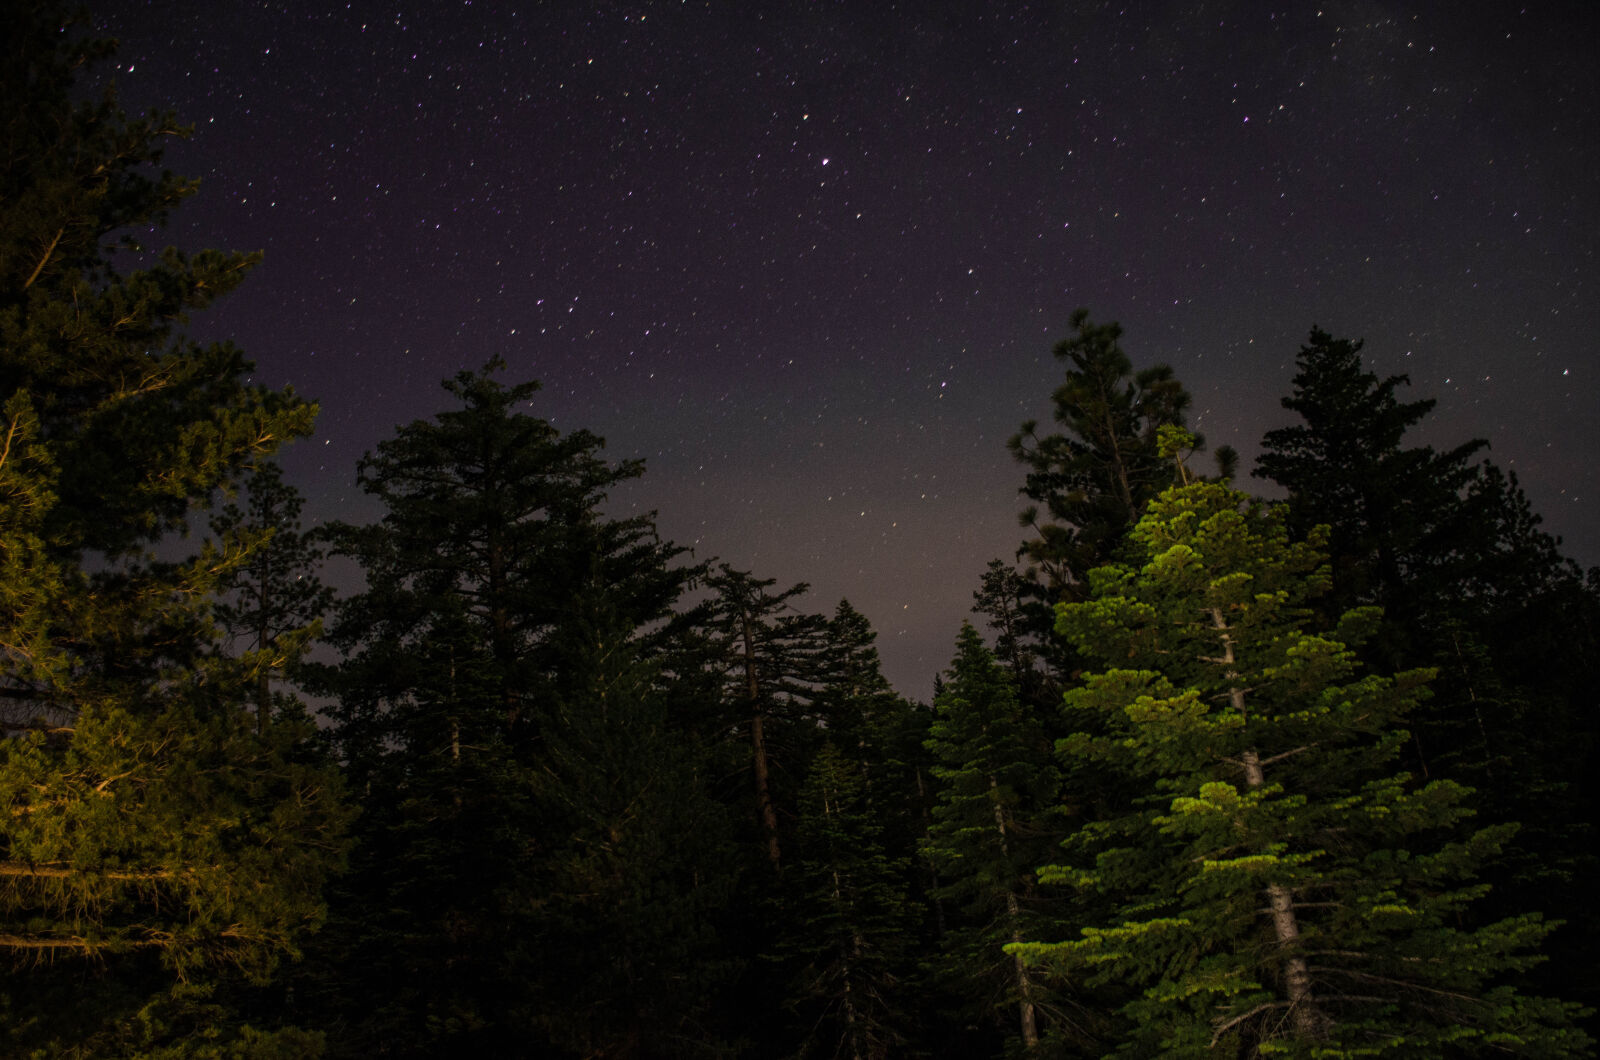 Nikon AF-S DX Nikkor 18-140mm F3.5-5.6G ED VR sample photo. Forest, trees, sky, stars photography